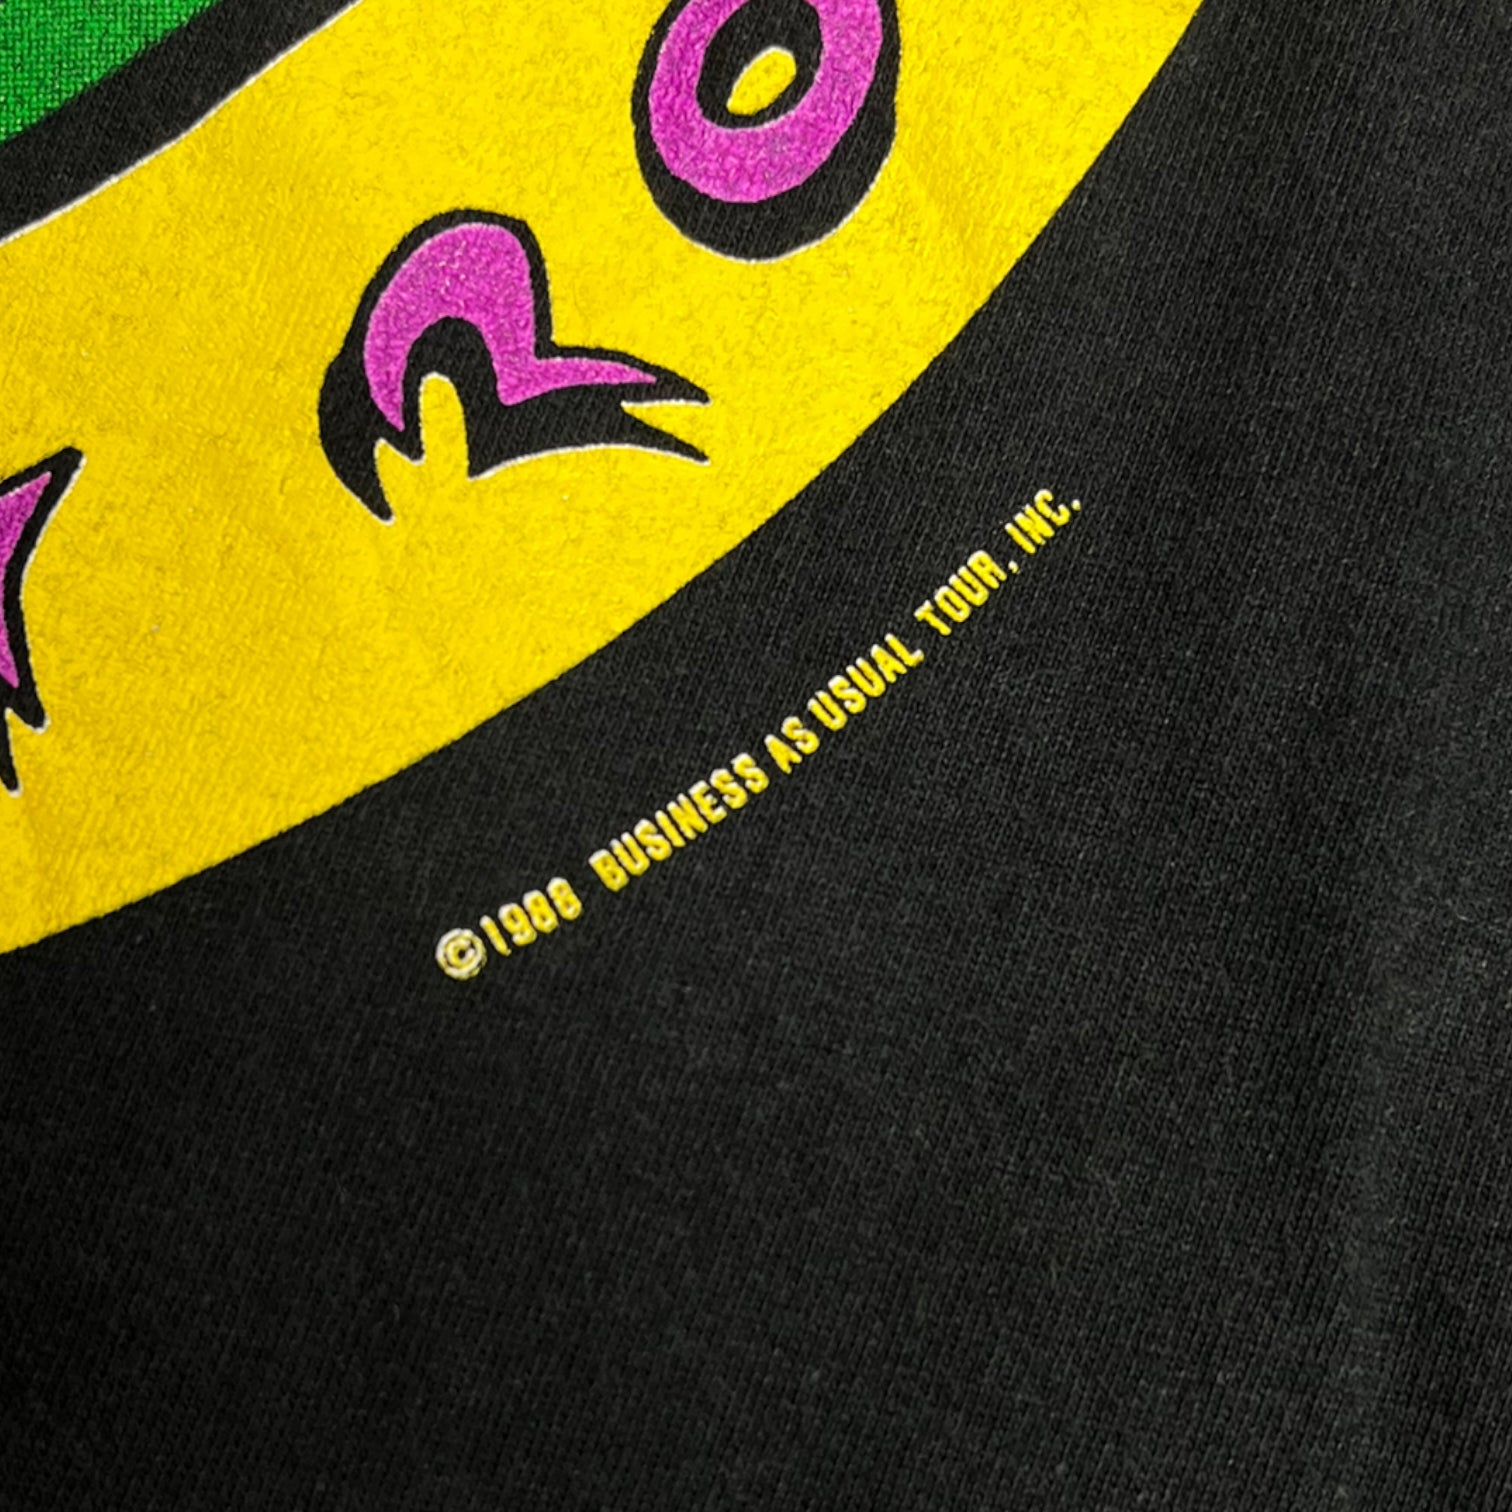 Sleek Black 1988 Little Feat Tour T-Shirt